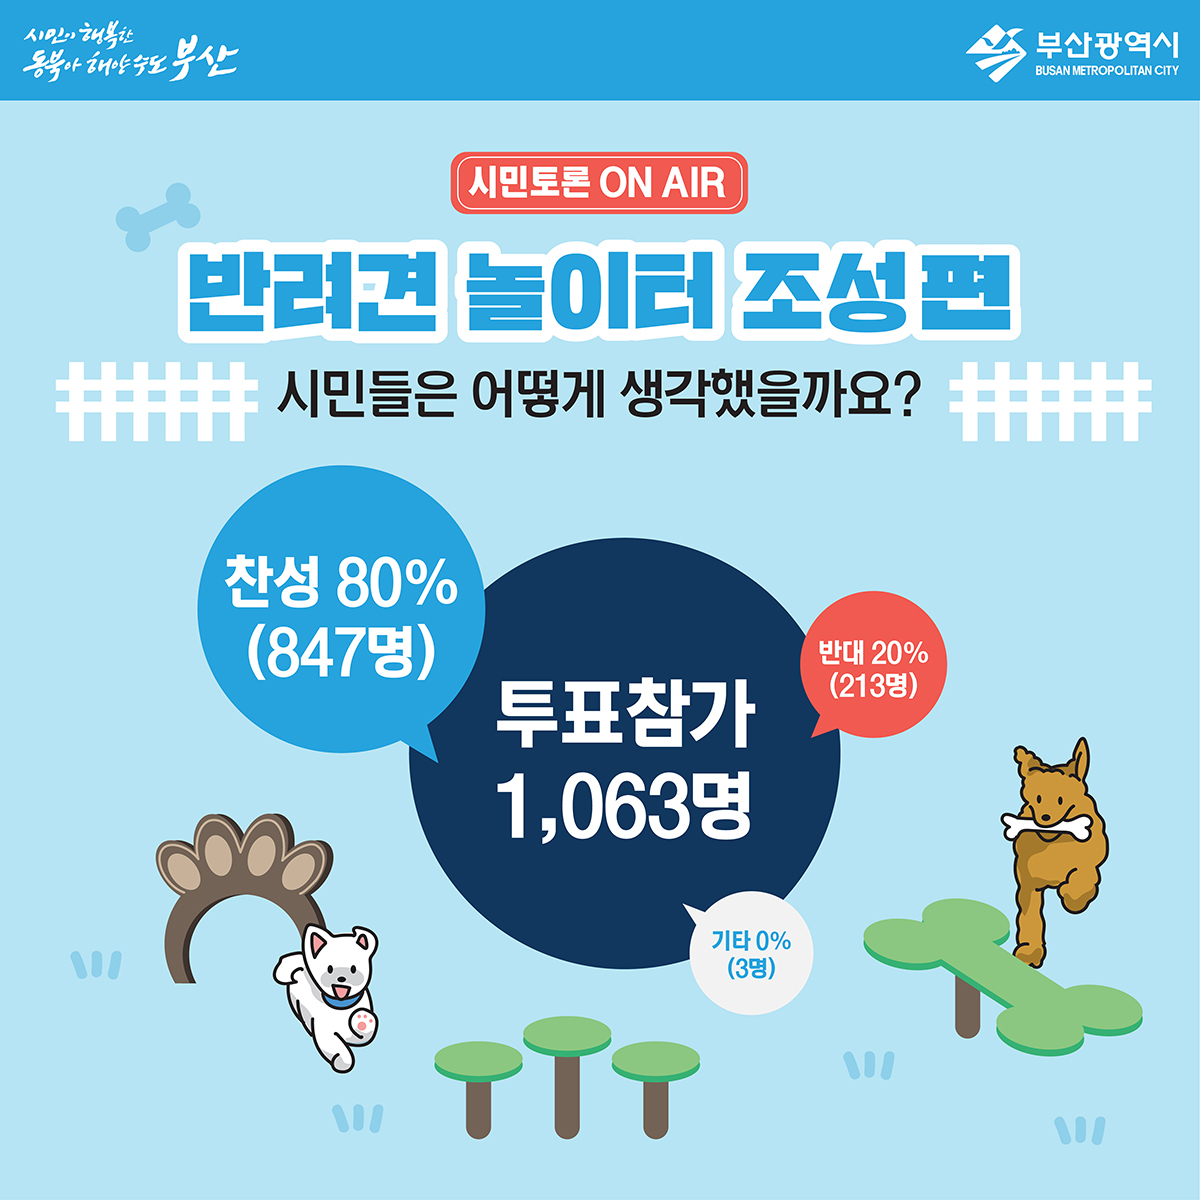 시민의 행복한 동북아 해양수도 부산 시민토론ON AIR 반려견 놀이터 조성편 시민들은 어떻게 생각했을까요? 찬성80%(847명), 반대20%(213명), 기타0%(3명)